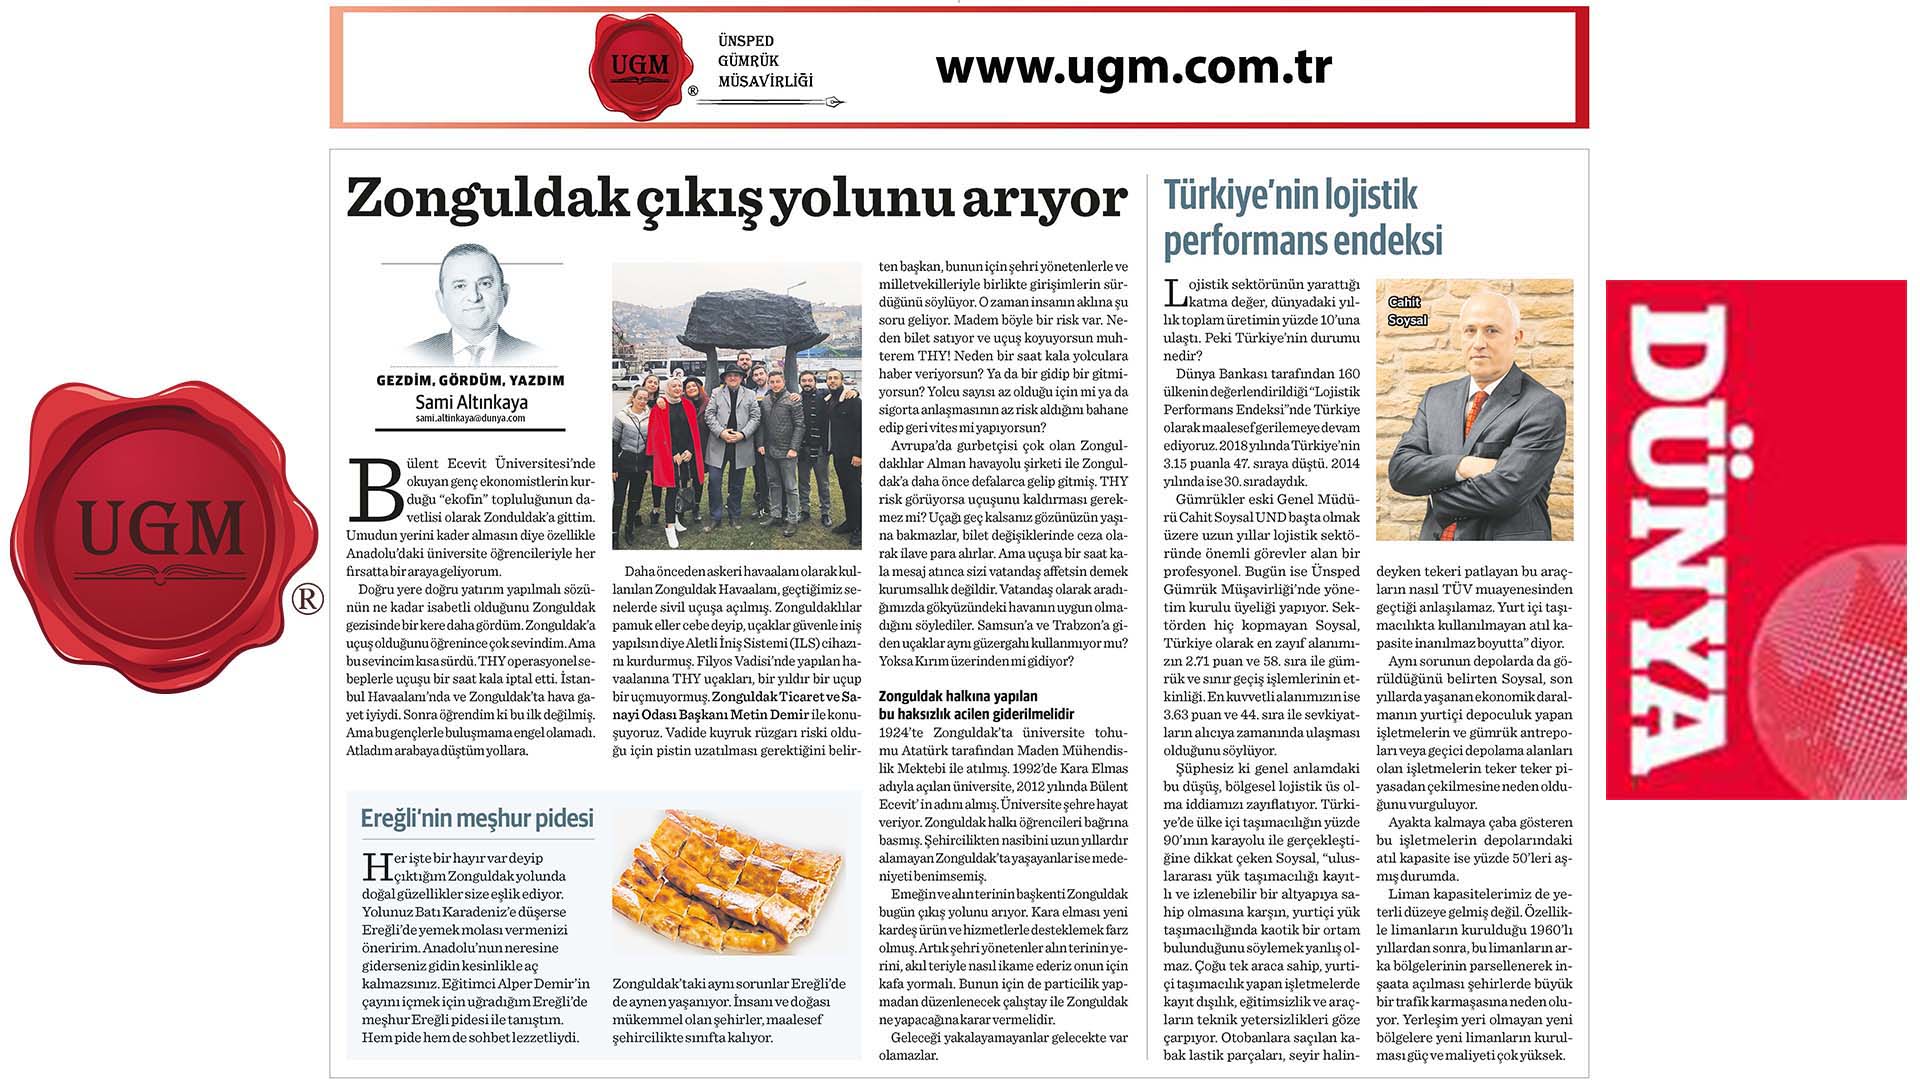 UGM Kurumsal İletişim Direktörümüz Sami ALTINKAYA'nın "Zonguldak Çıkış Yolunu Arıyor" Başlıklı Yazısı, 17.02.2020 Tarihinde Dünya Gazetesi'nde Yayınlandı.